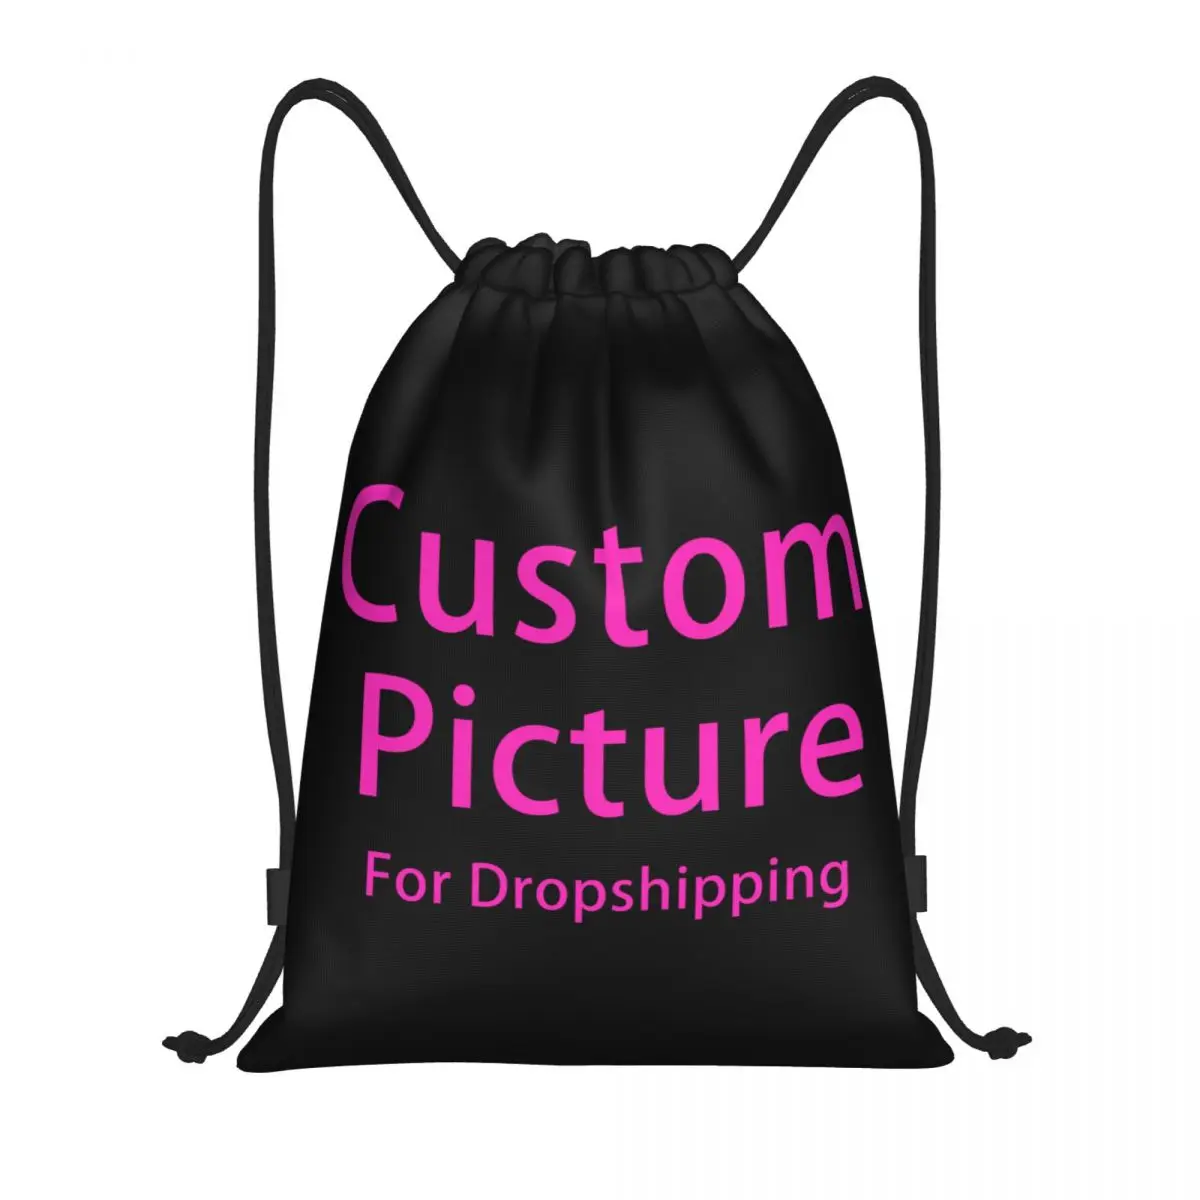 

Персонализированный Рюкзак на шнурке с индивидуальным фото и логотипом, спортивная сумка для спортзала для мужчин и женщин, индивидуальный тренировочный рюкзак с принтом «сделай сам»